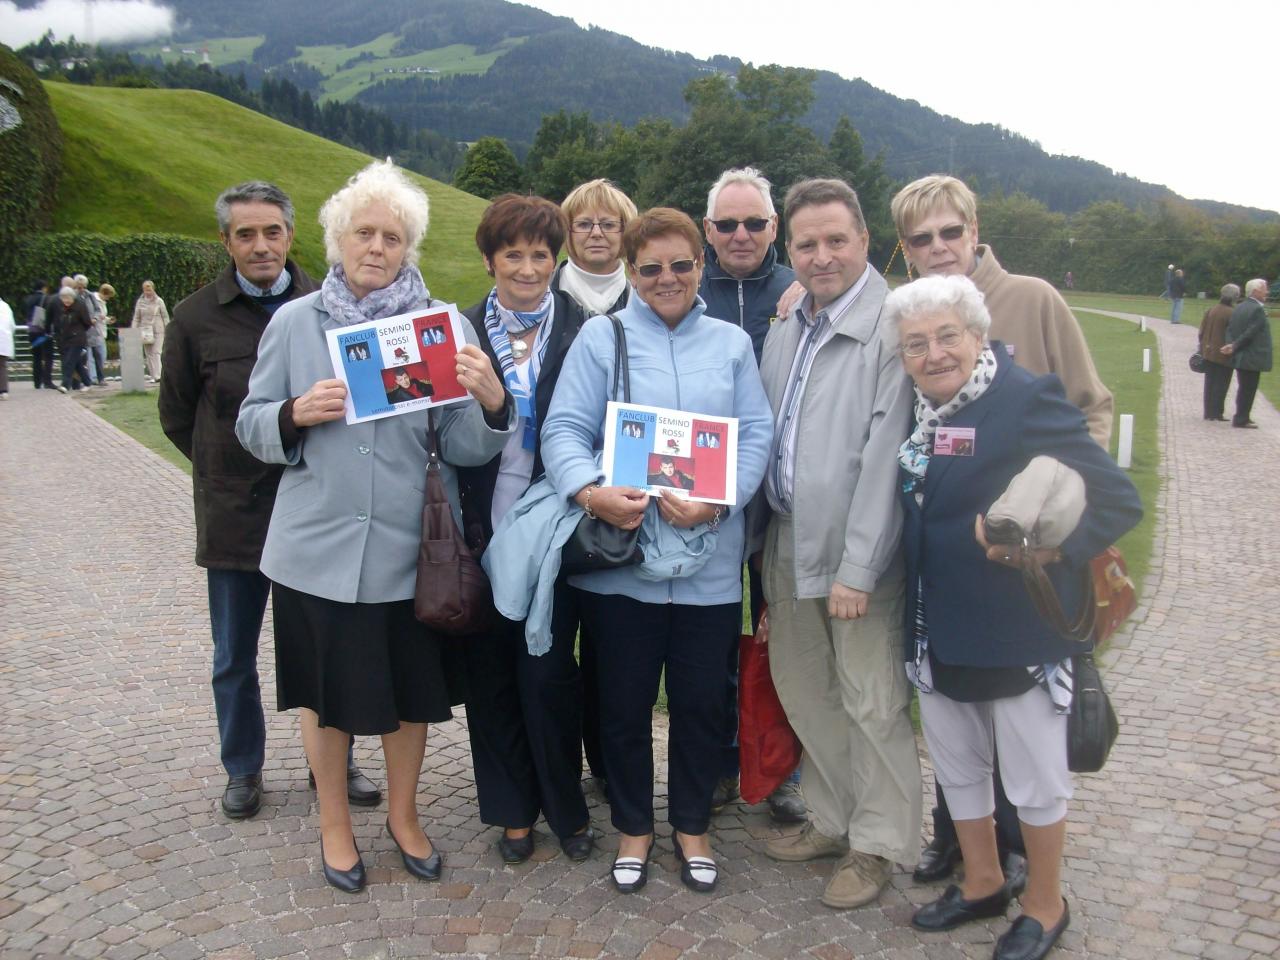 Open -Air du 1er septembre 2012 à Wattens